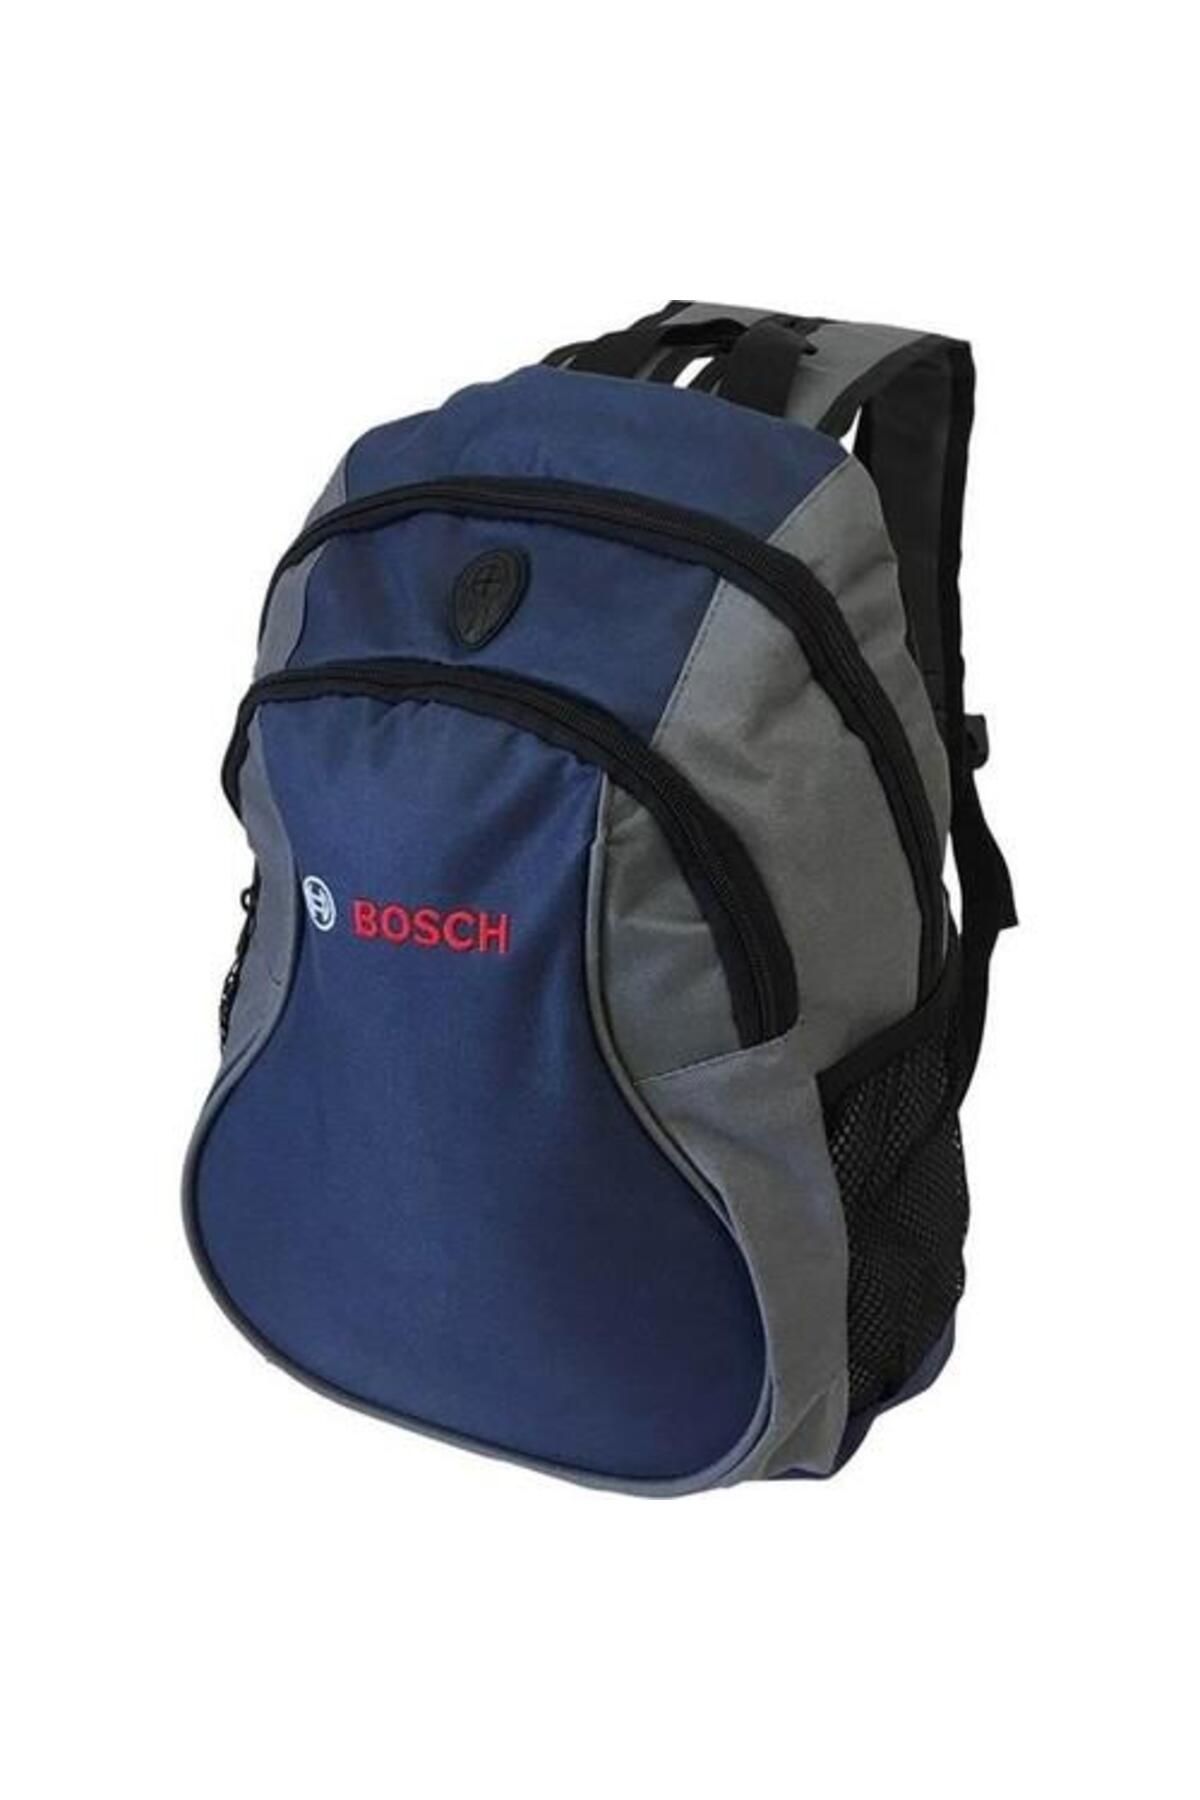 Bosch Sırt Çantası (MAVİ)